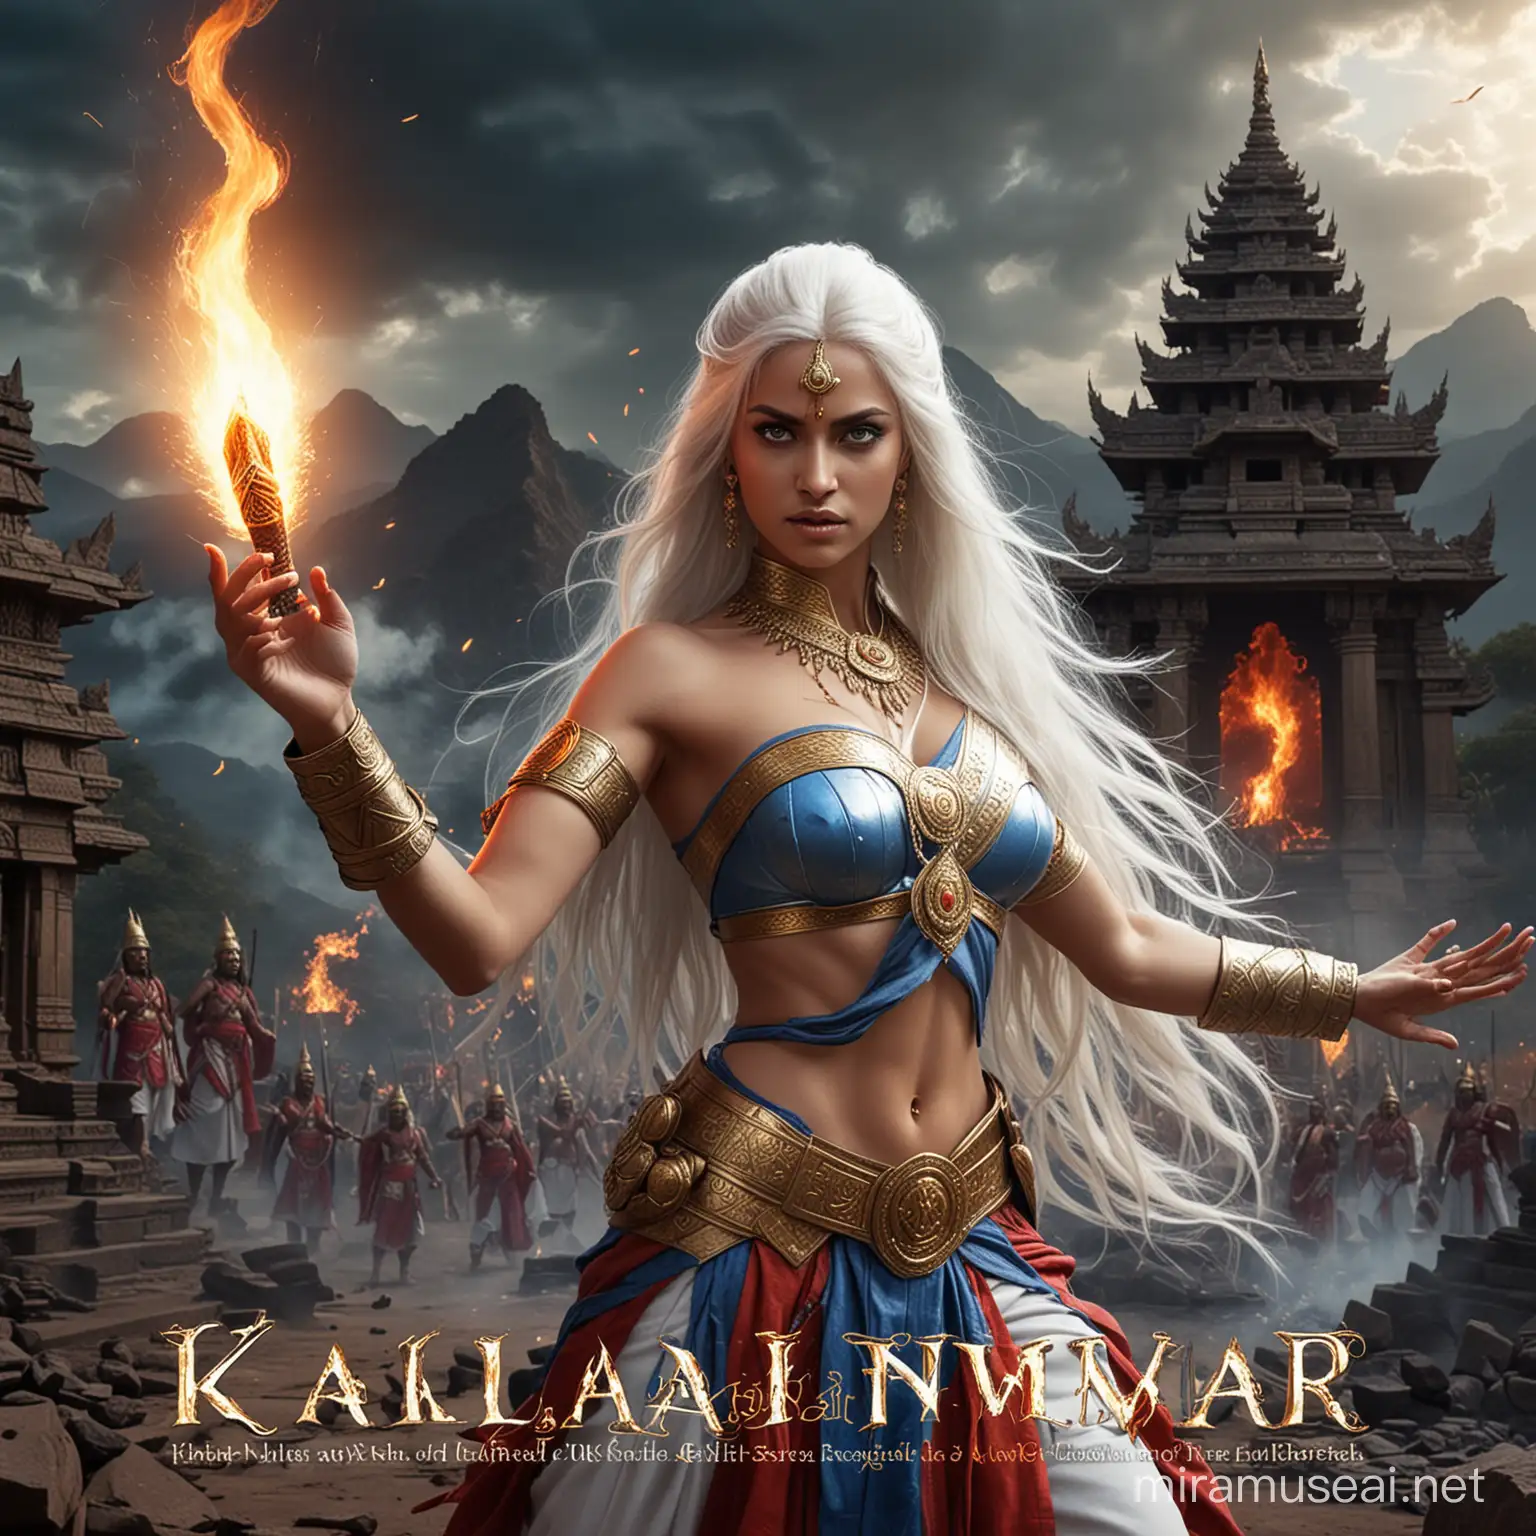 Empress Goddess General Casting Fire and Lightning at Kaliman War